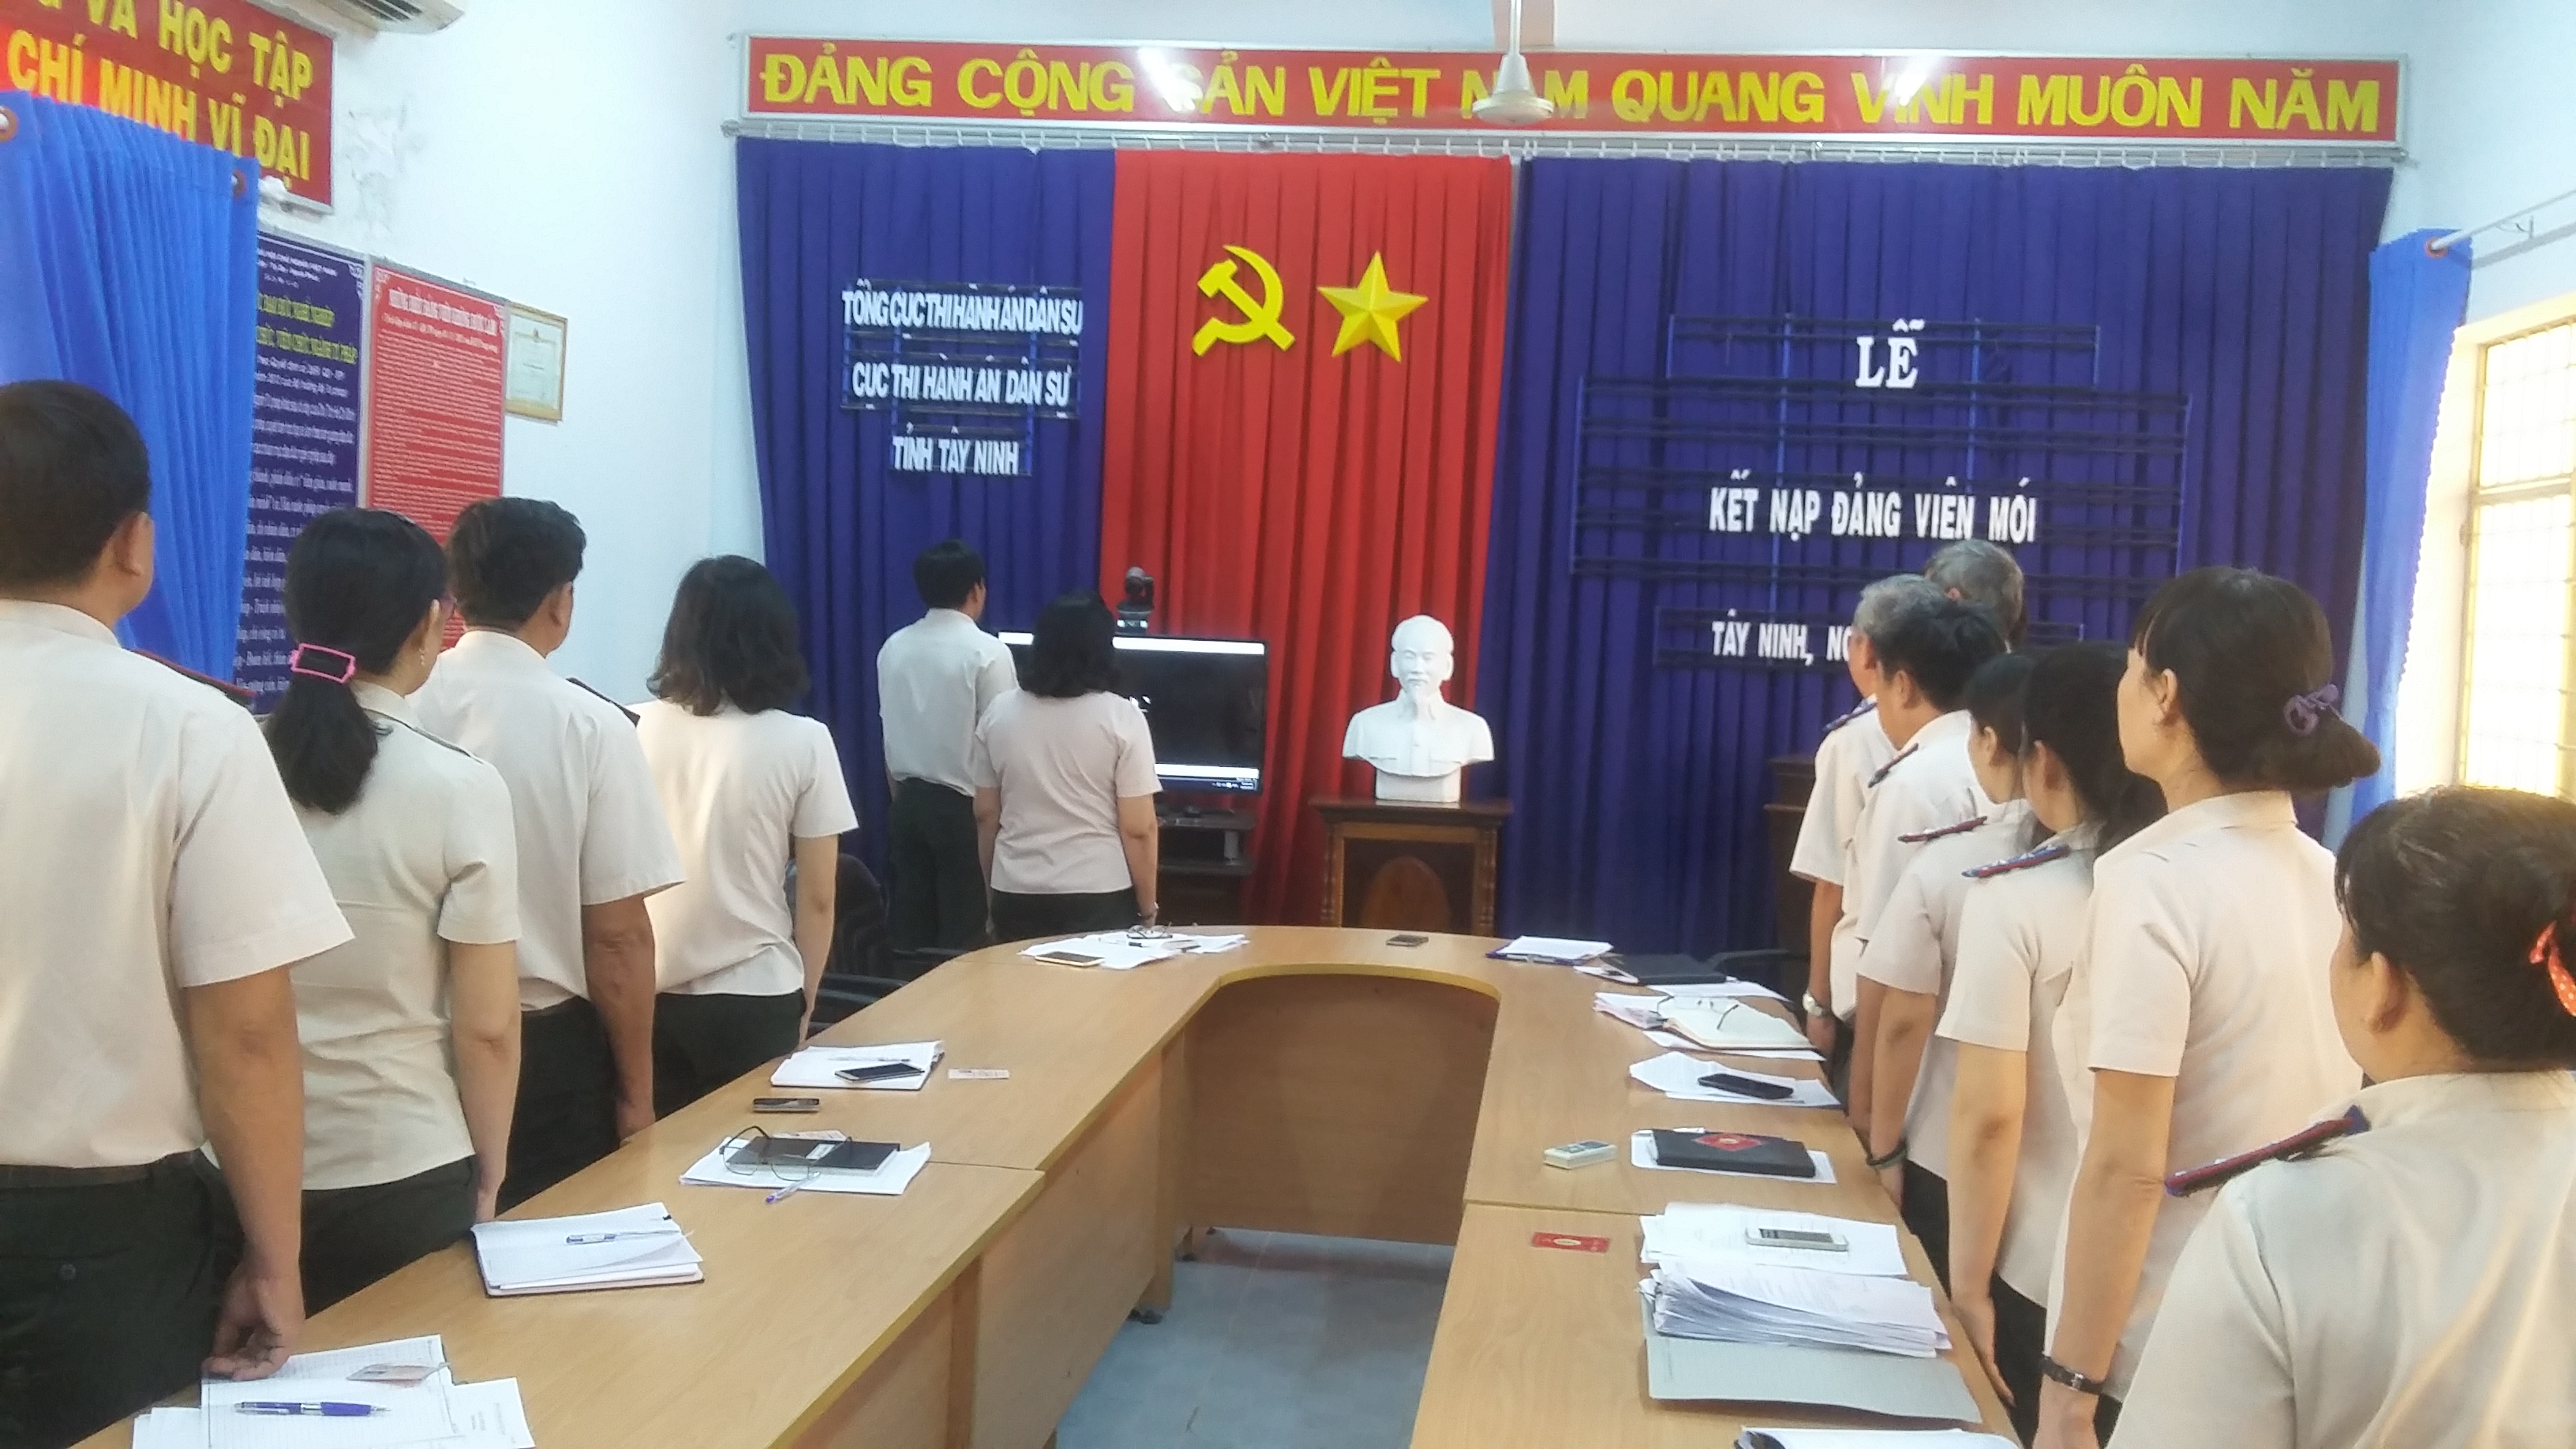 Chi bộ Cục THADS tỉnh Tây Ninh kết nạp đảng viên mới năm 2017